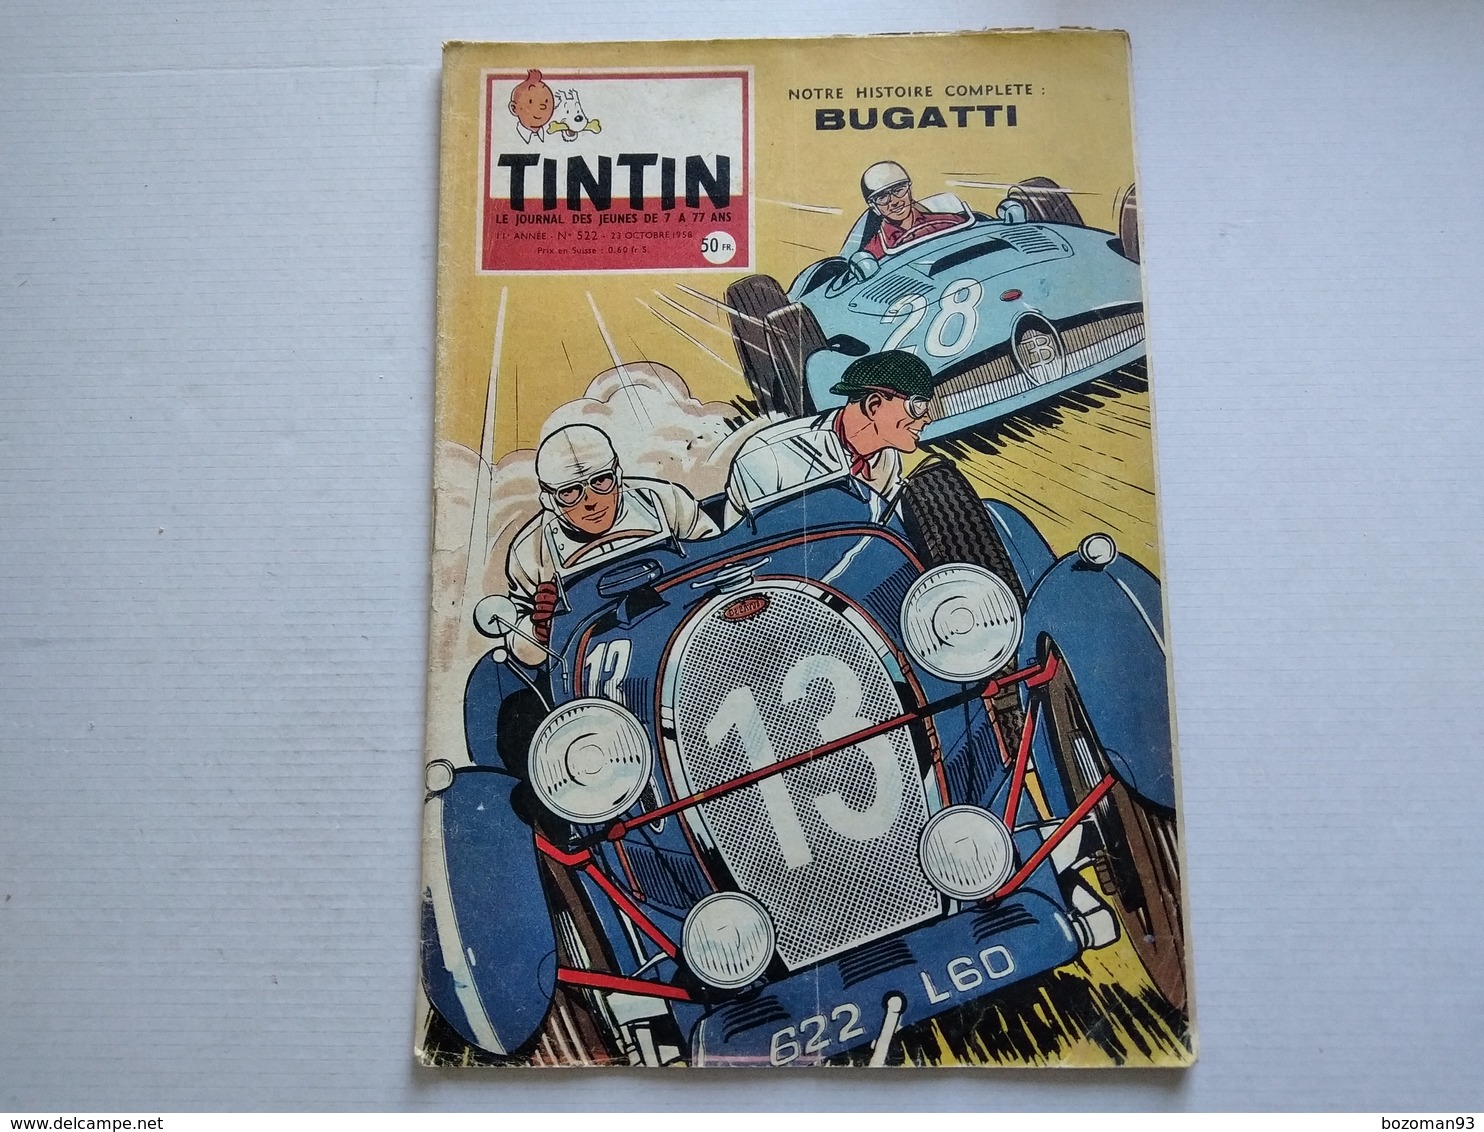 TINTIN N° 522  BUGATTI  ( 4p ) COUVERTURE  J.GRATON  SANS LE POINT TINTIN  TBE - Tintin